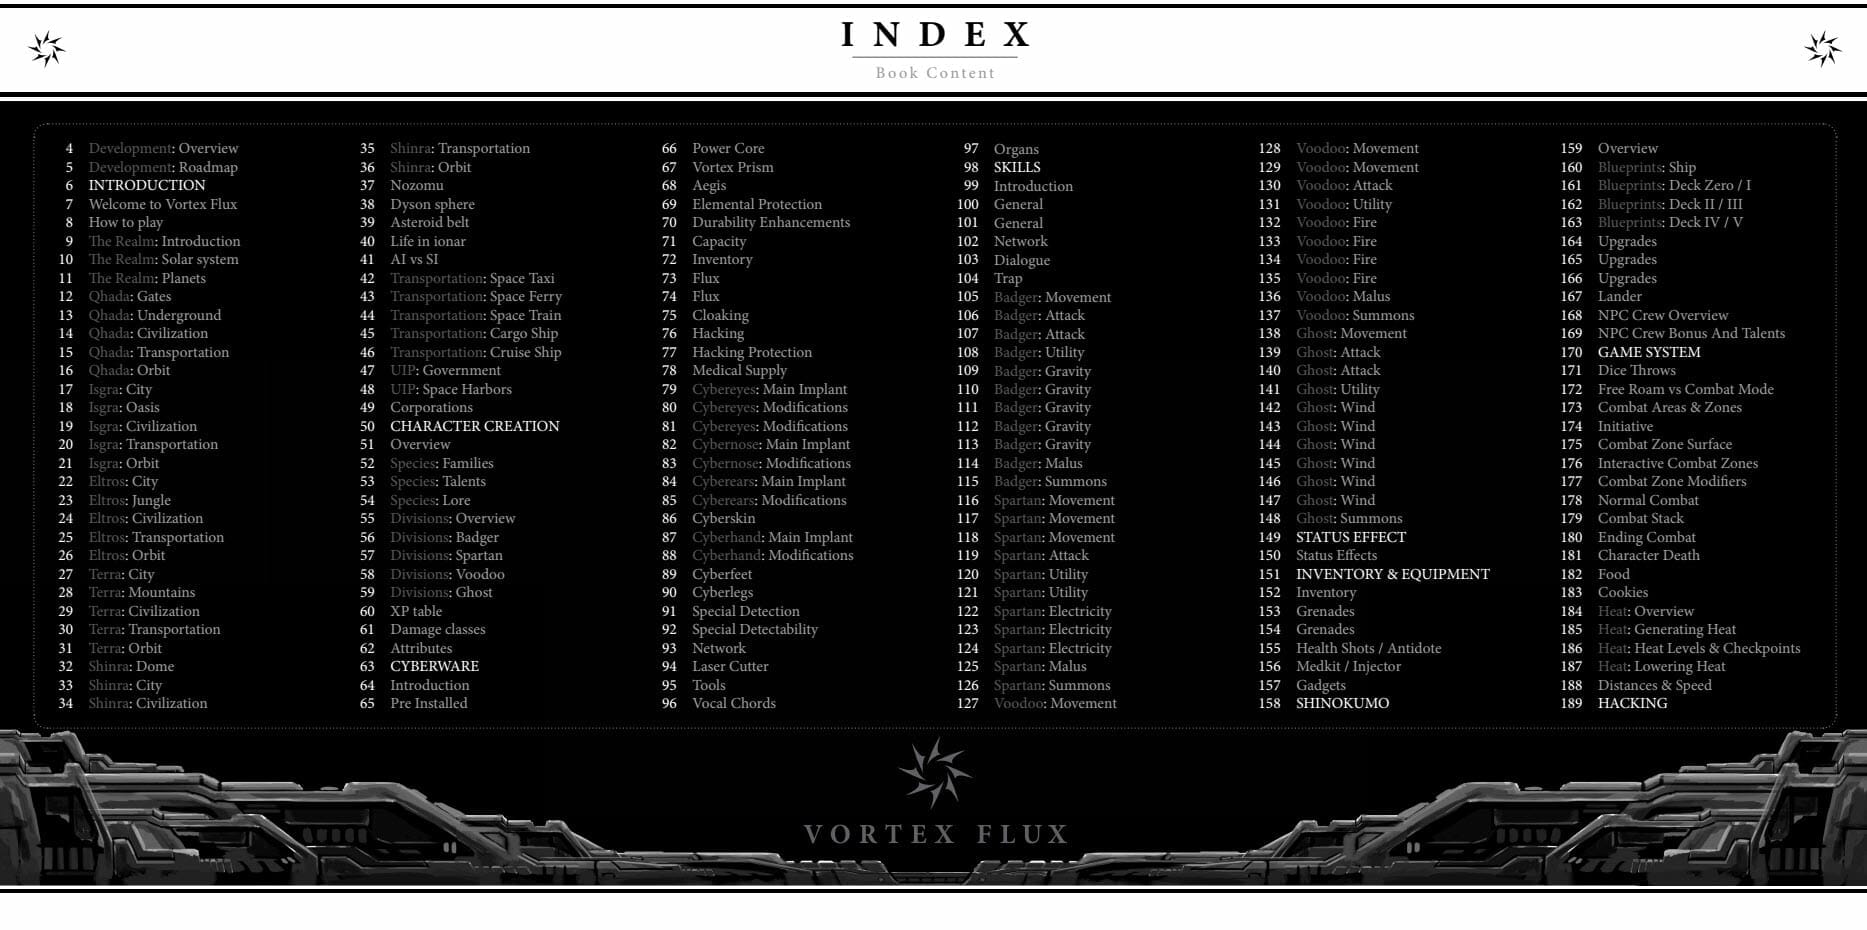 Vortex Flux index